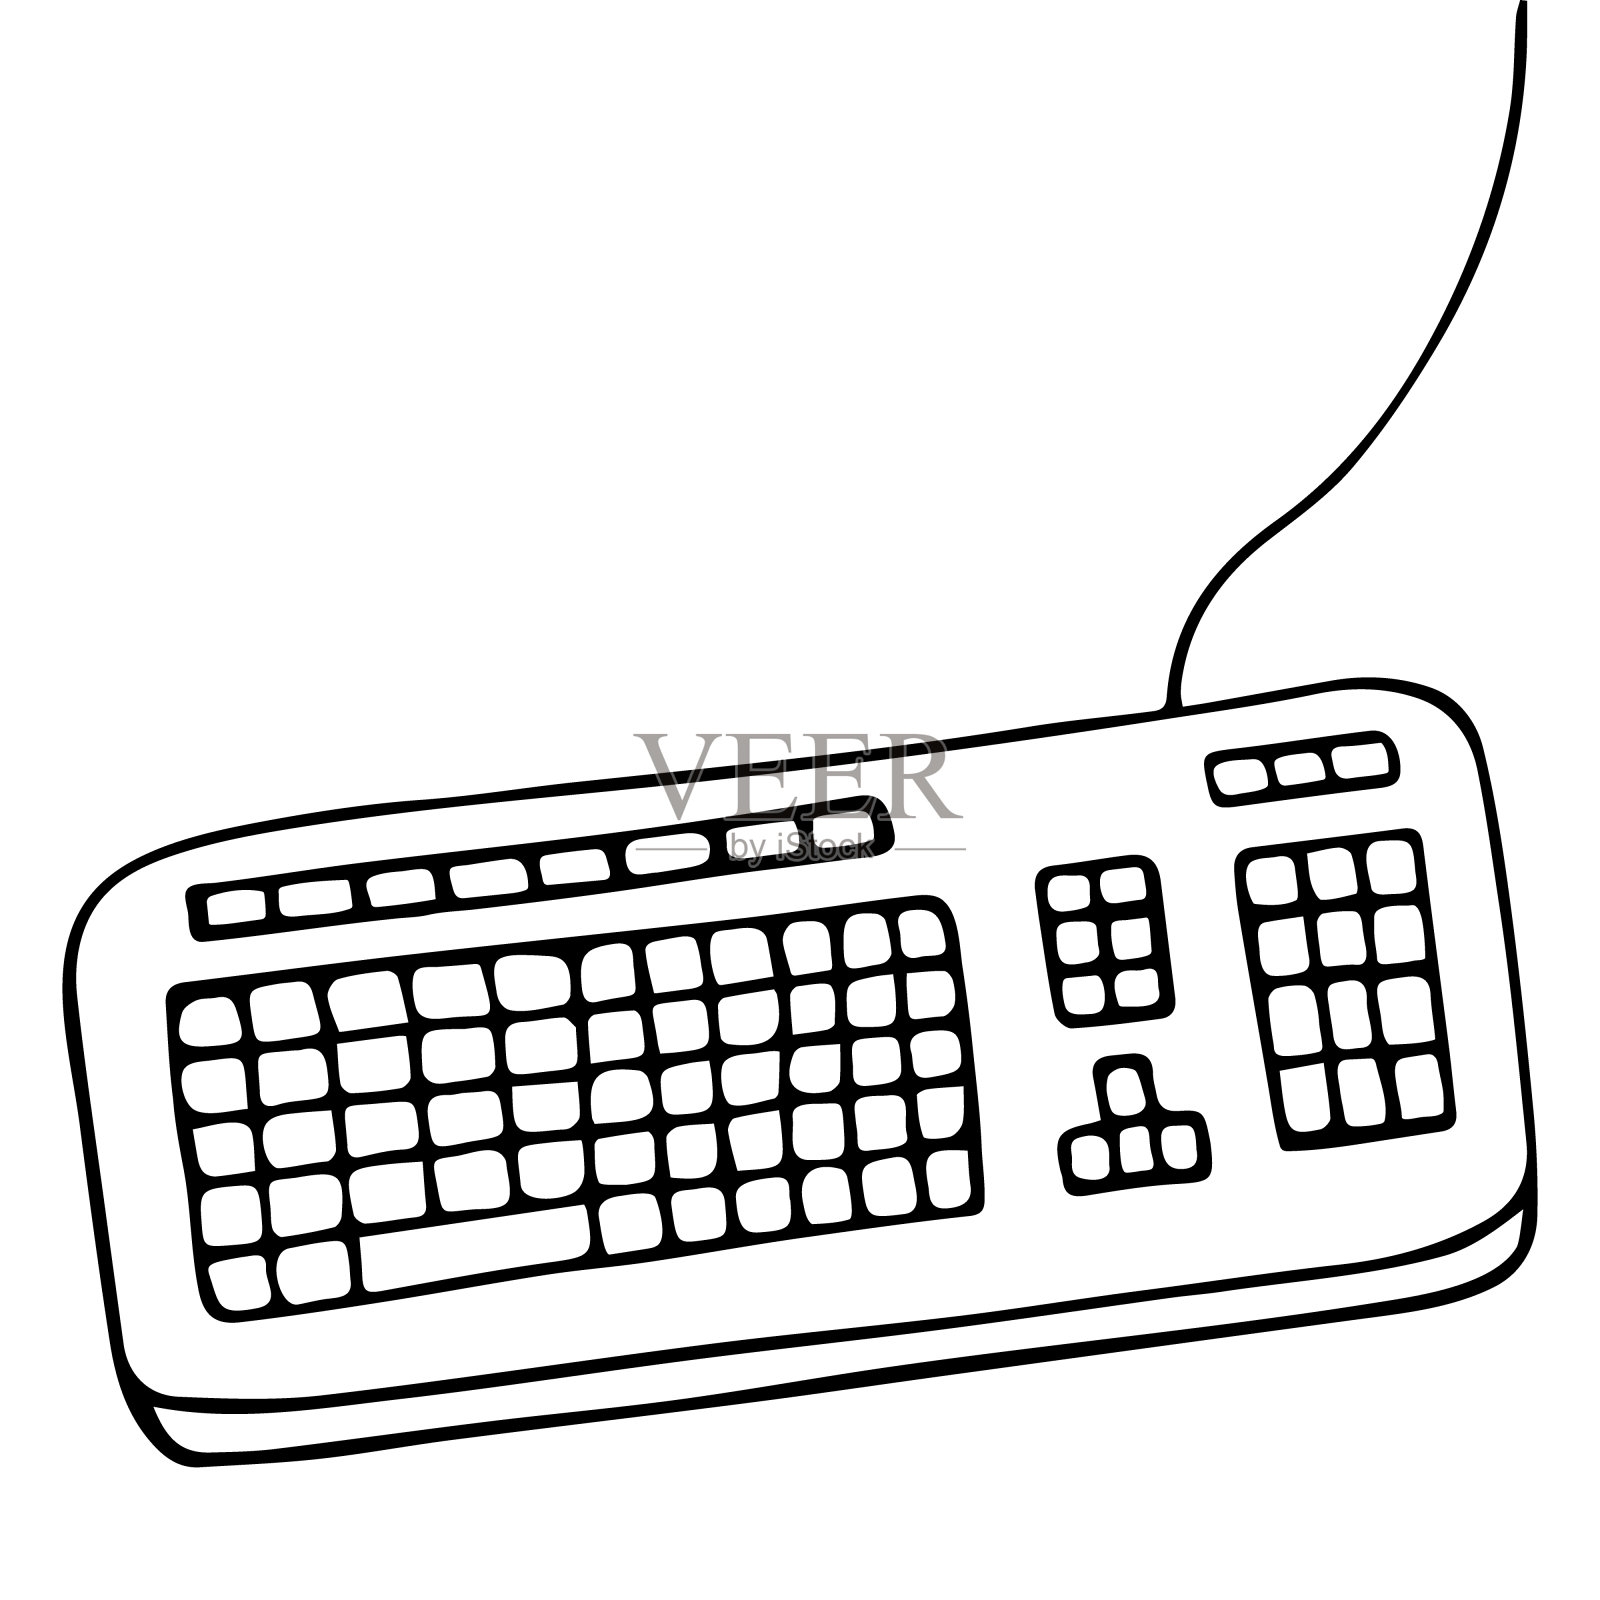 键盘。一种向计算机输入信息的有线装置。该设备由一组密钥组成。矢量插图涂鸦风格。轮廓在一个孤立的白色背景。草图。字母、数字信号。设计元素图片